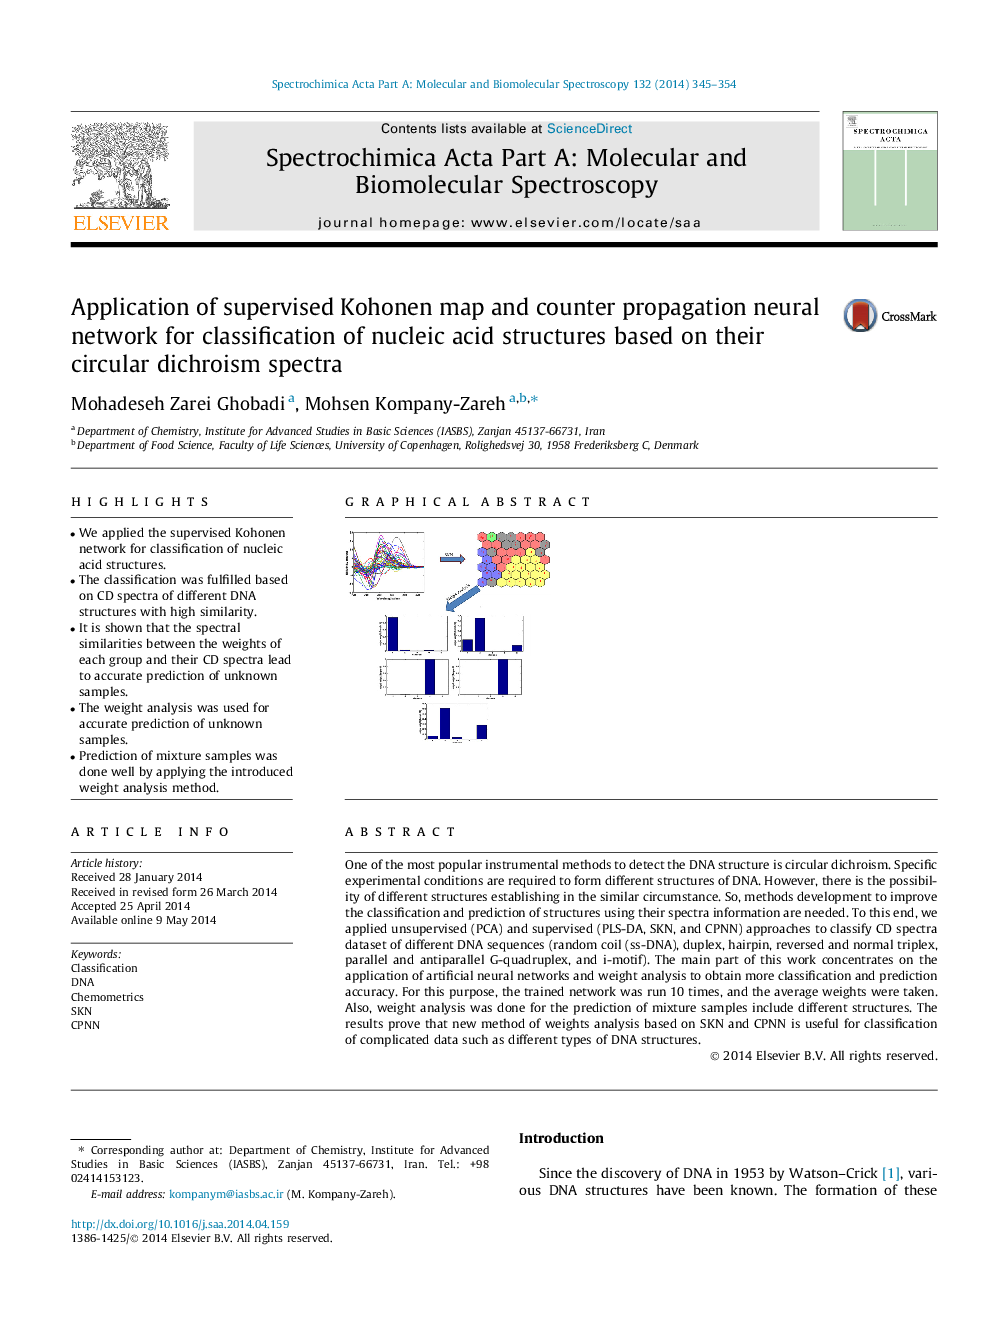 استفاده از نقشه کوهنن تحت نظارت و شبکه عصبی ضد انحراف برای طبقه بندی ساختارهای اسید نوکلئیک بر اساس طیف های دایروی دایره ای آنها 